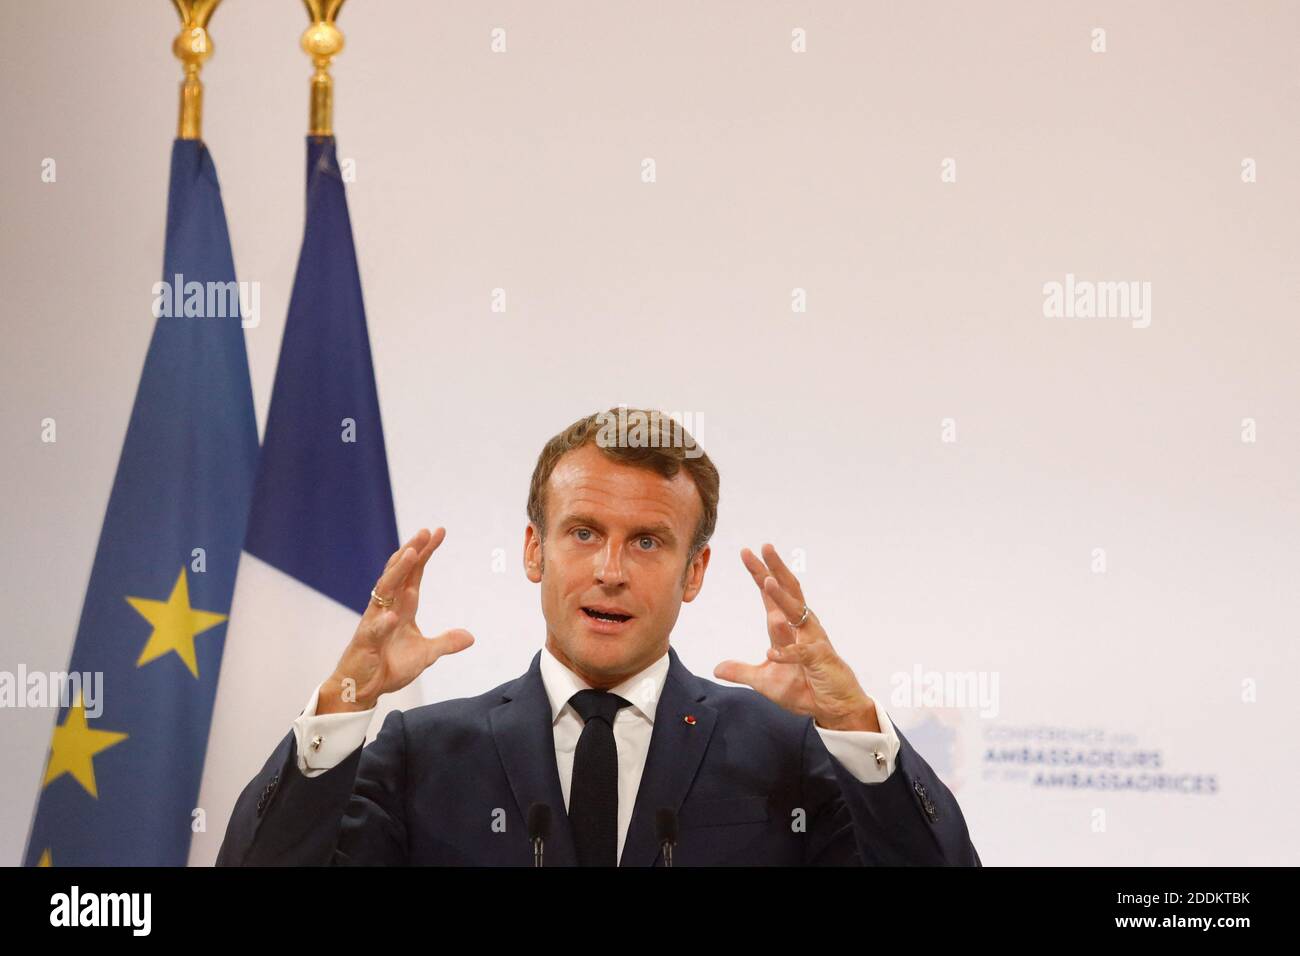 Der französische Präsident Emmanuel Macron hält eine Rede während der jährlichen französischen Botschafterkonferenz am 27. August 2019 im Elysée-Palast in Paris. Foto von Hamilton/Pool/ABACAPRESS.COM Stockfoto